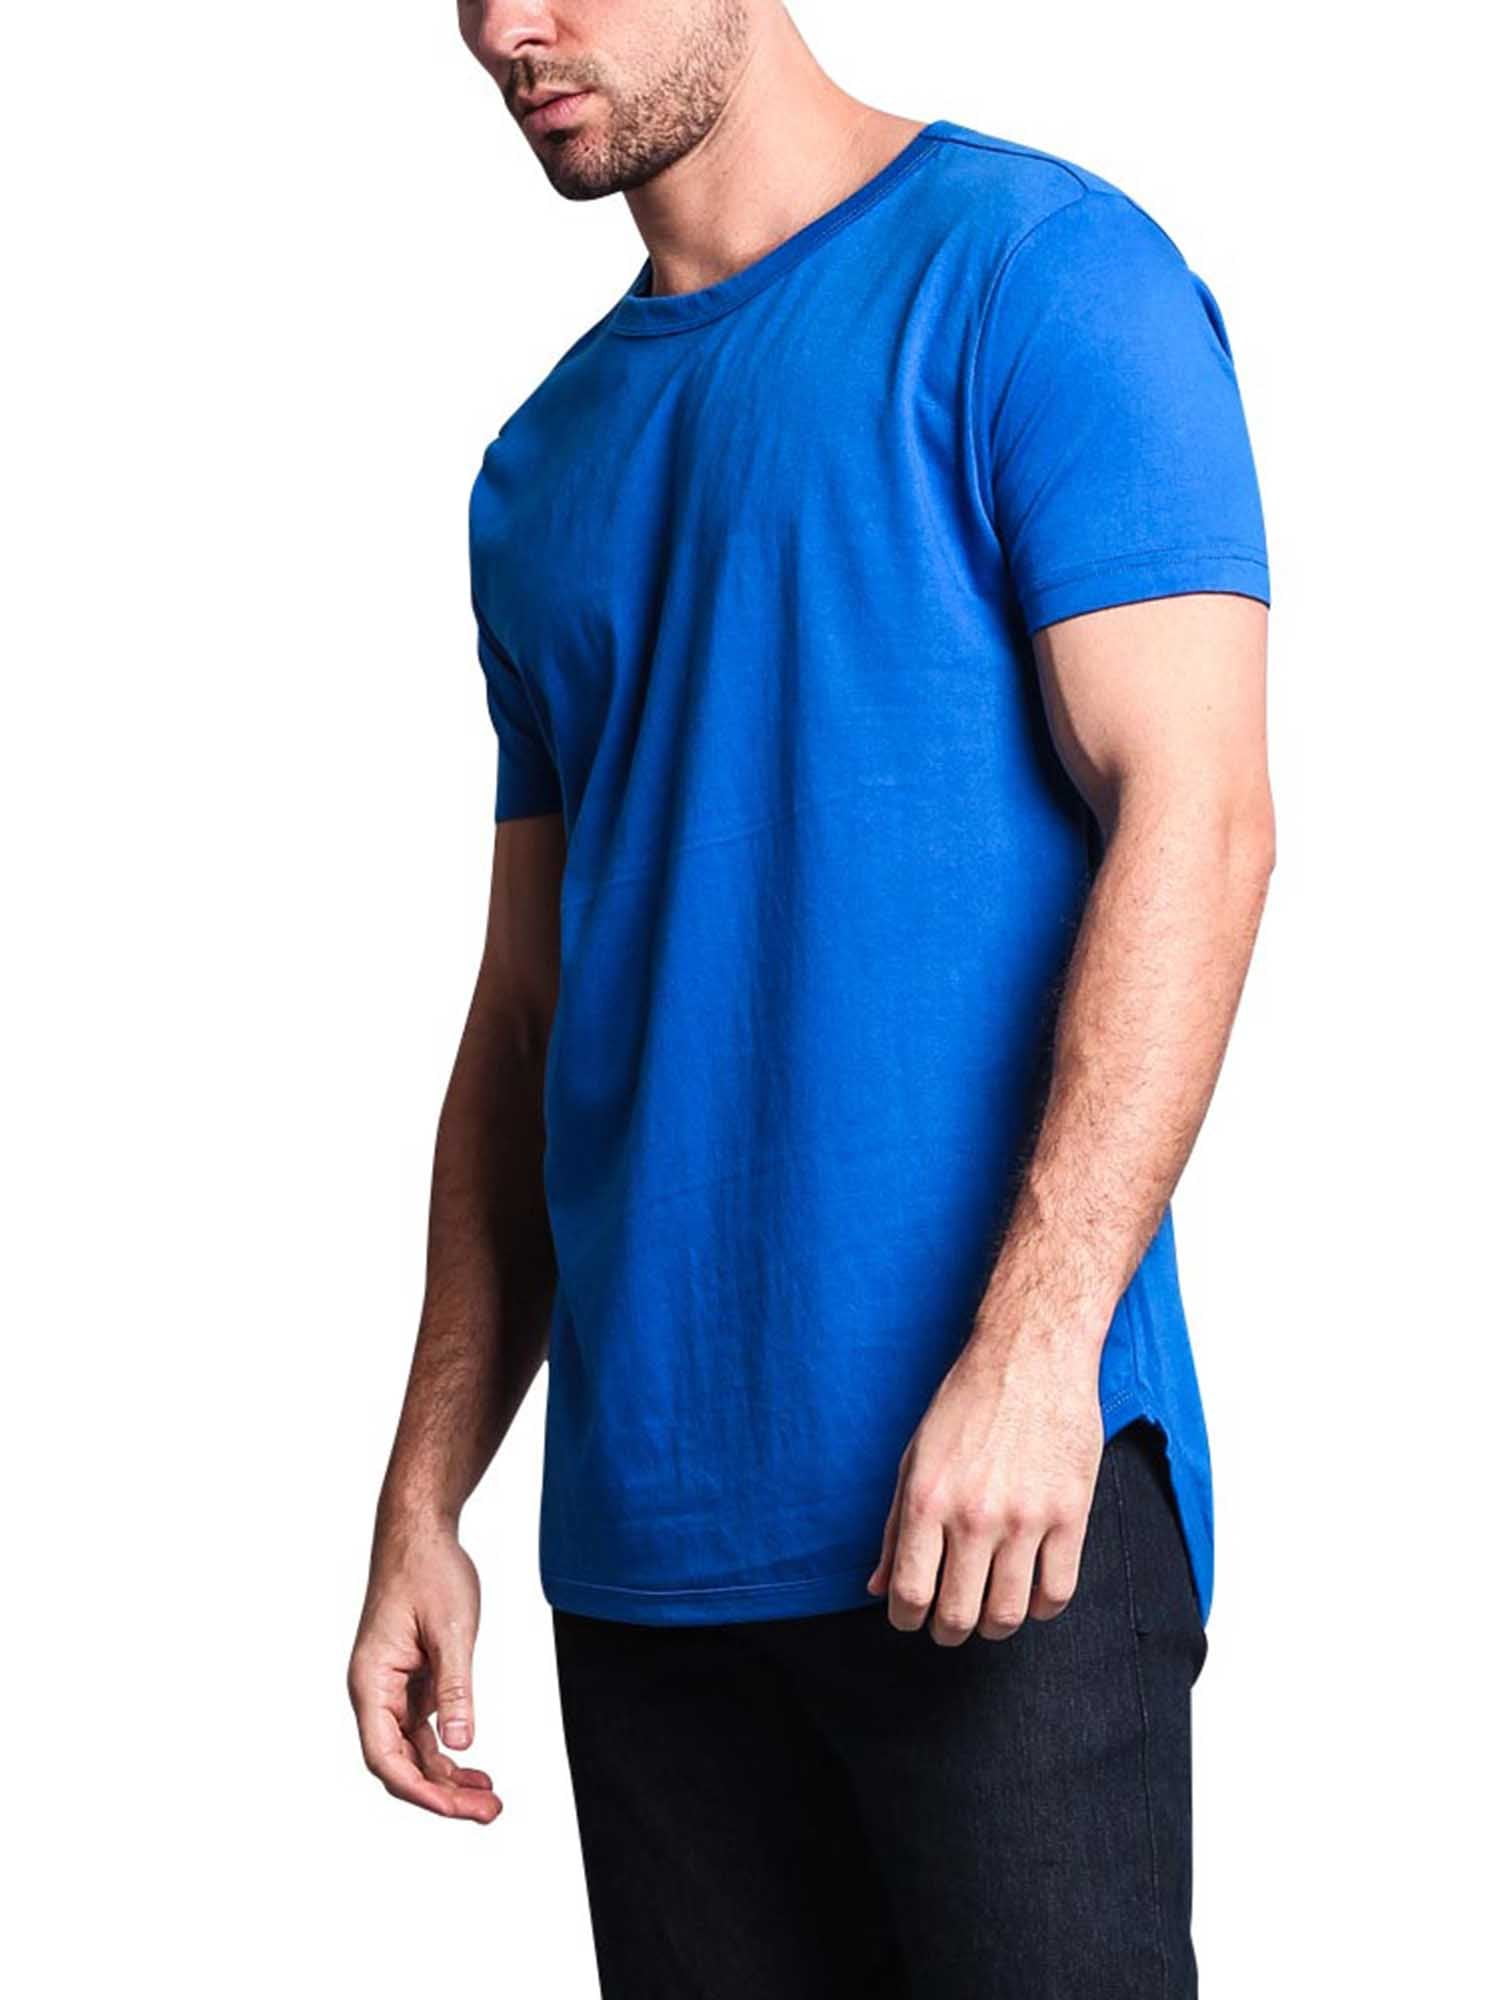 4x royal blue t shirt